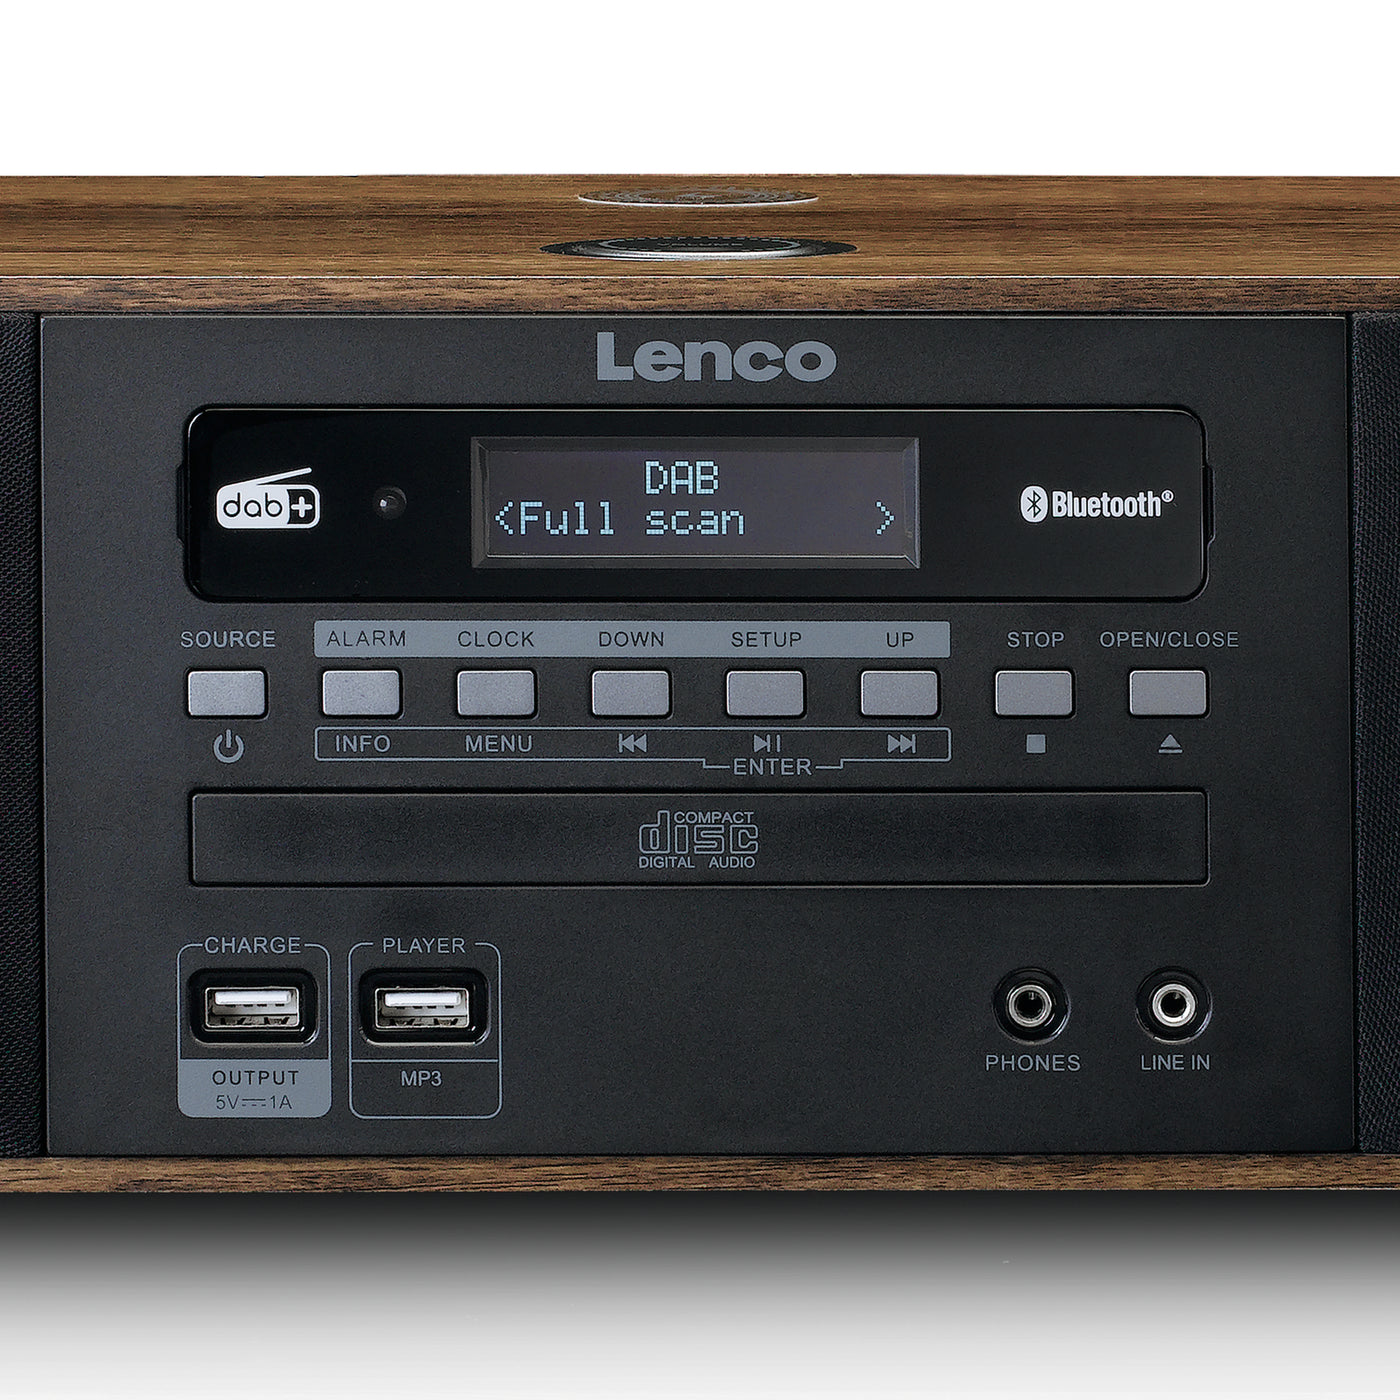 LENCO DAR-051WD - Stereo DAB+/ radio, CD, 2 FM QI and Lenco-Catalog USB, – Bluetooth®